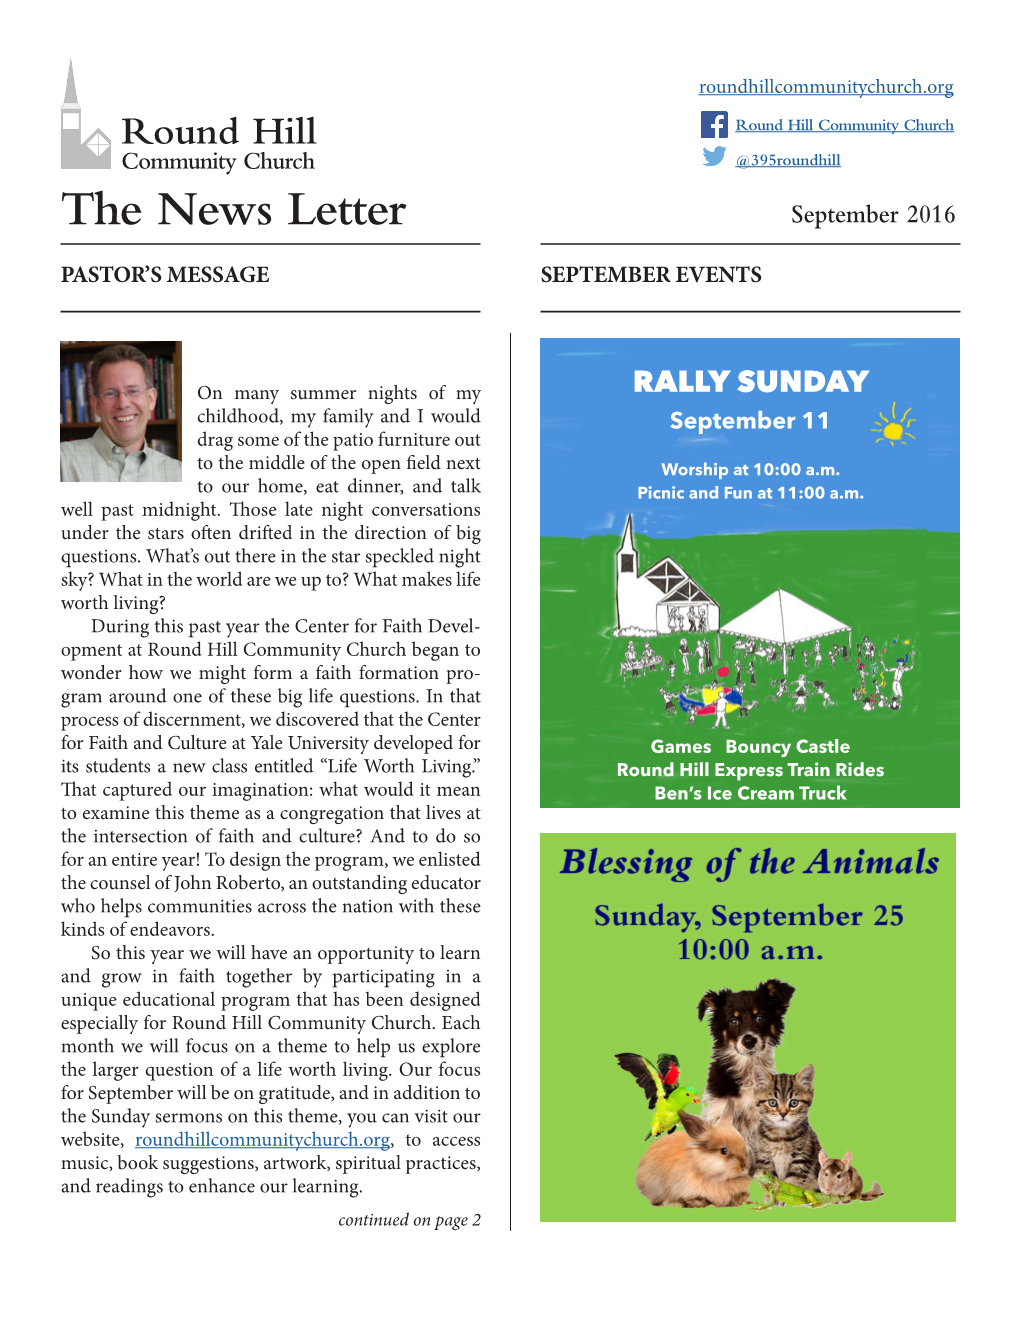 The News Letter September 2016